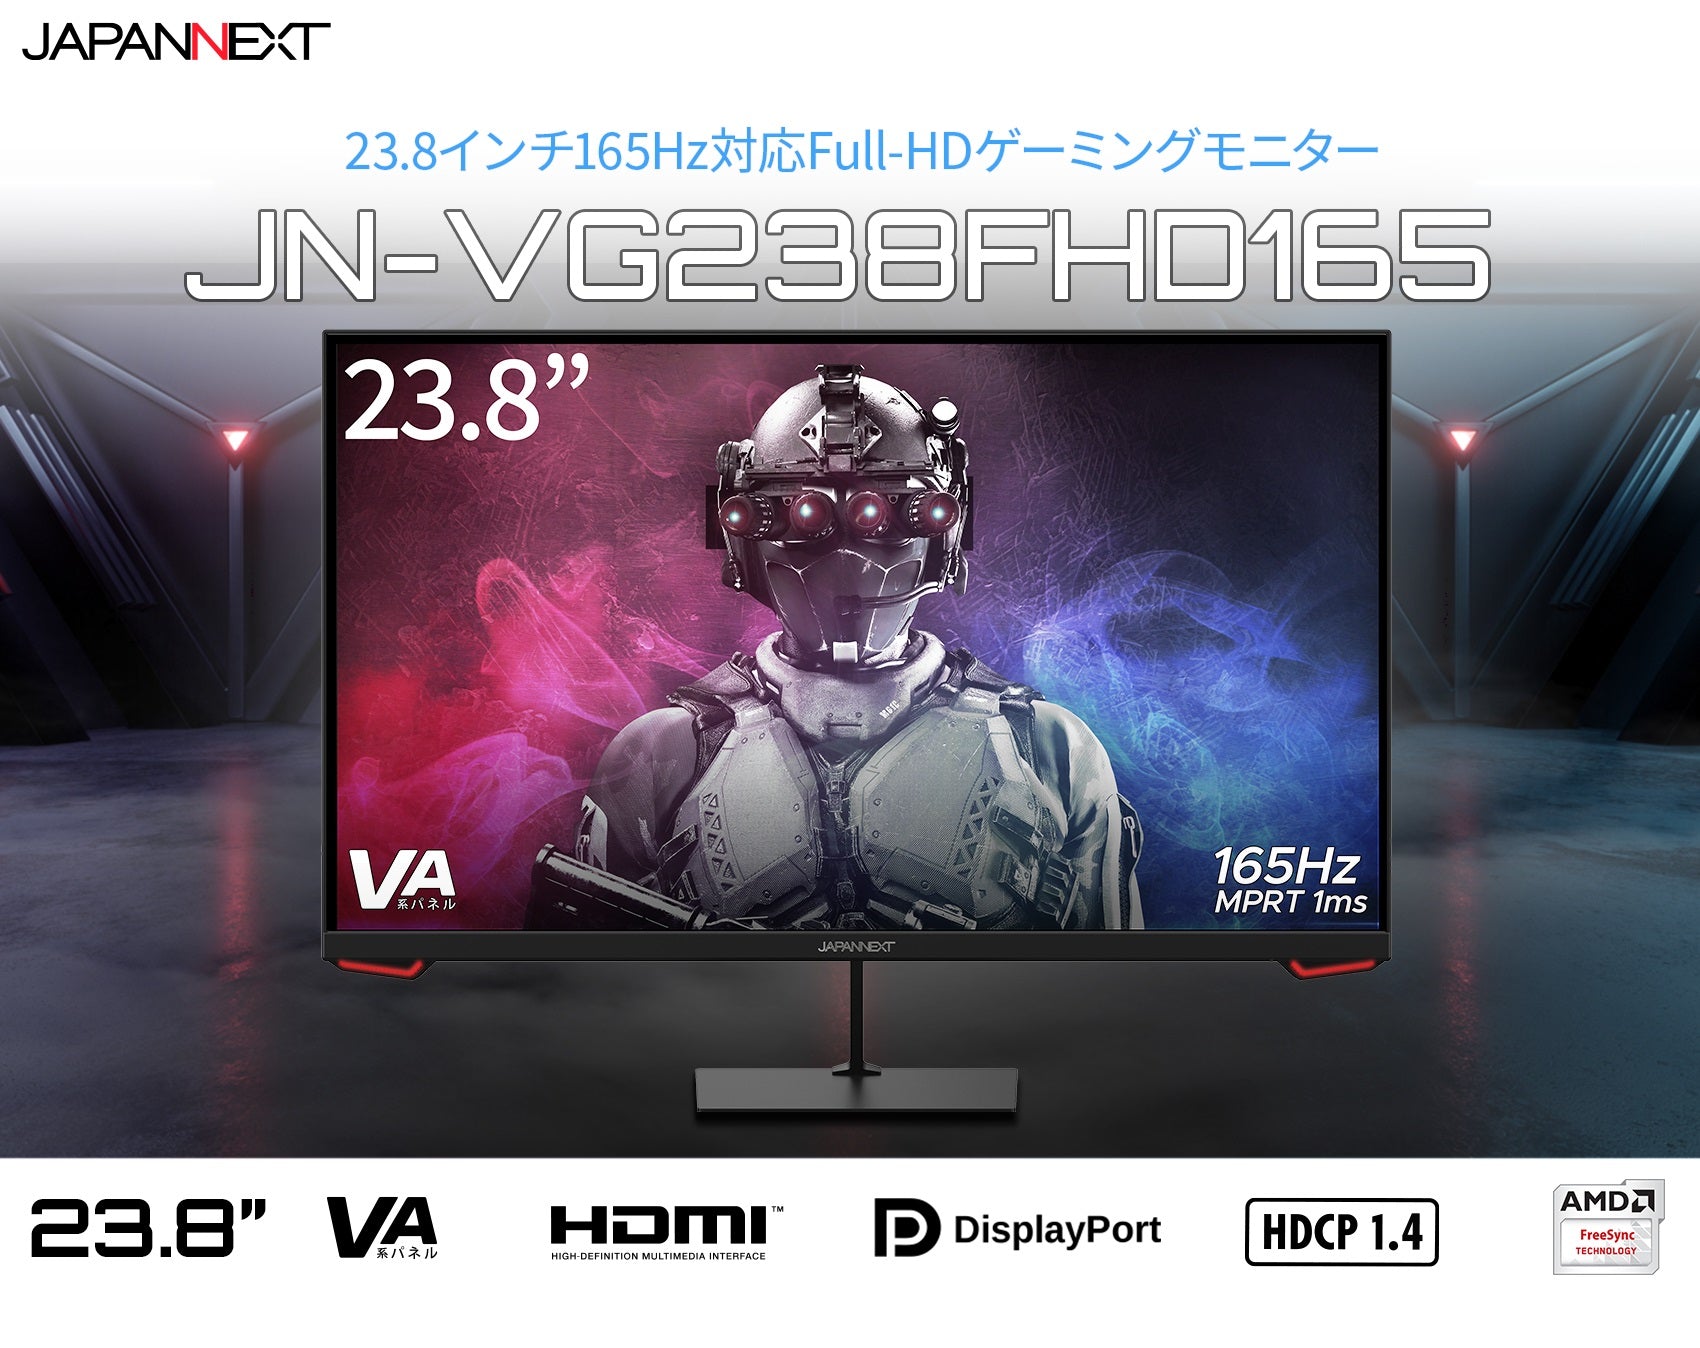 JN-VG238FHD165